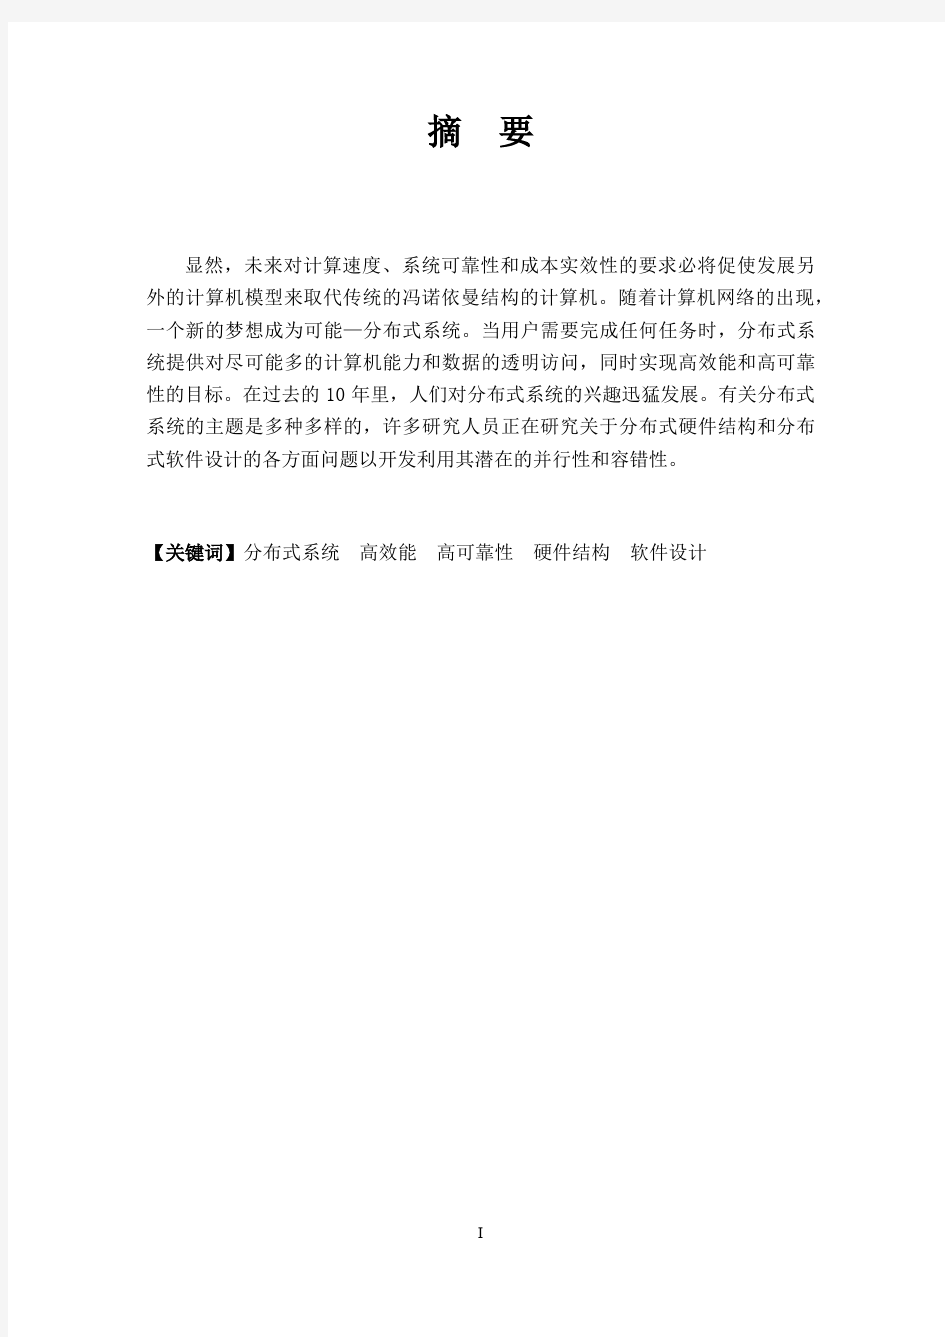 分布式系统文献阅读综述(李海广S130201036)